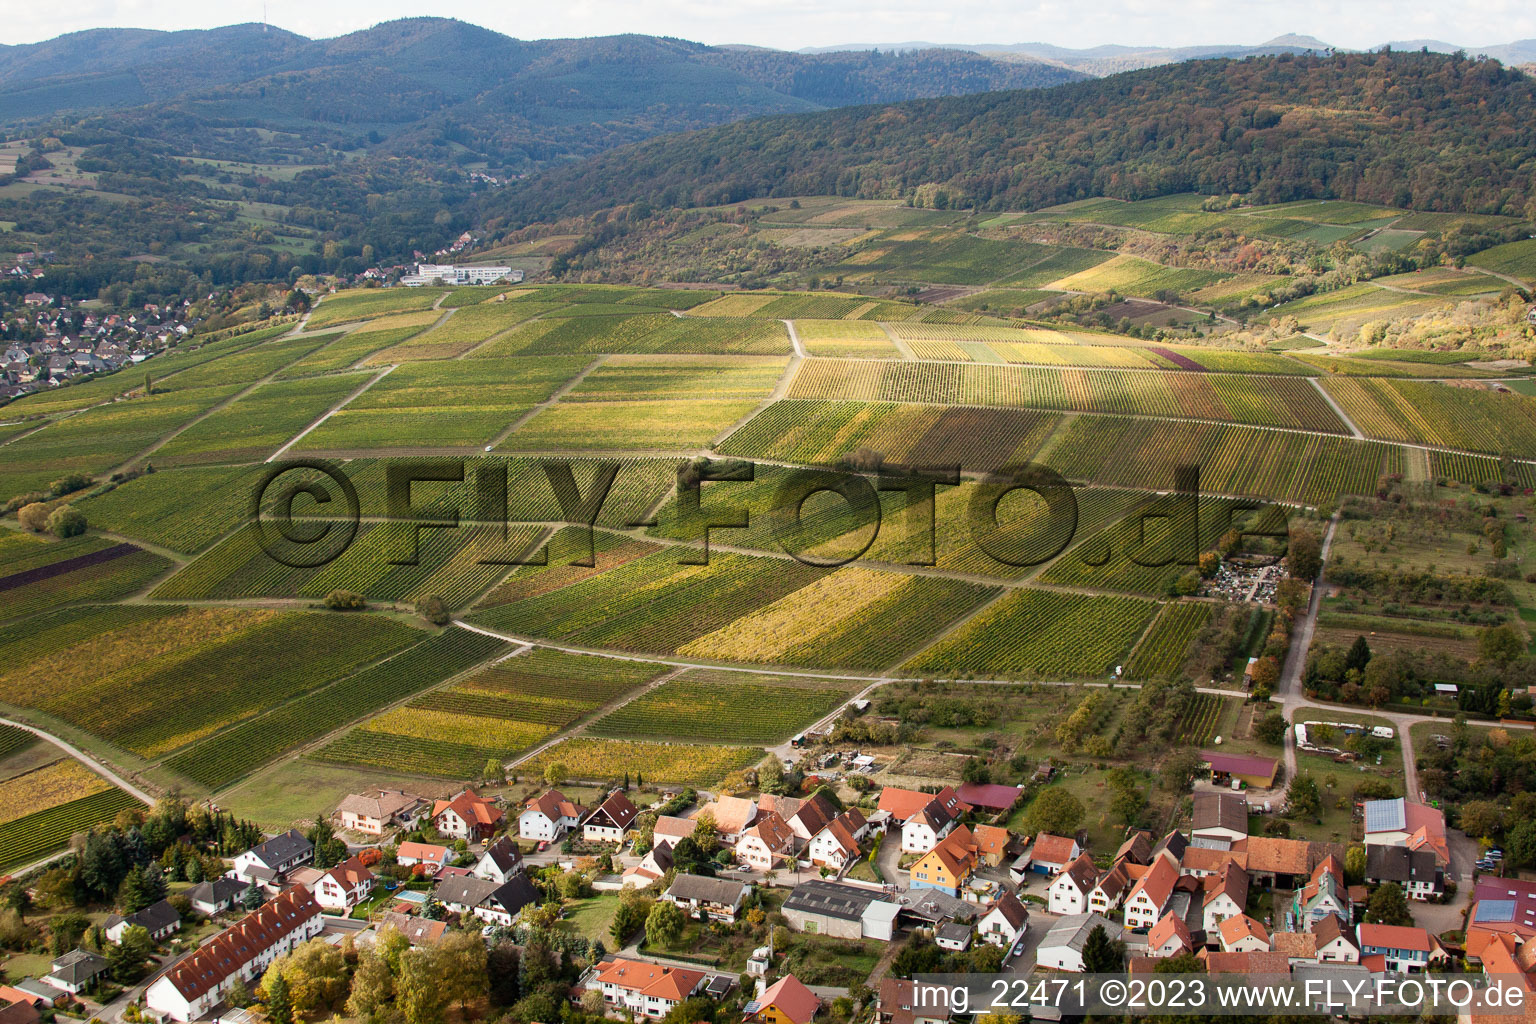 Sonnenberg in the district Schweigen in Schweigen-Rechtenbach in the state Rhineland-Palatinate, Germany viewn from the air